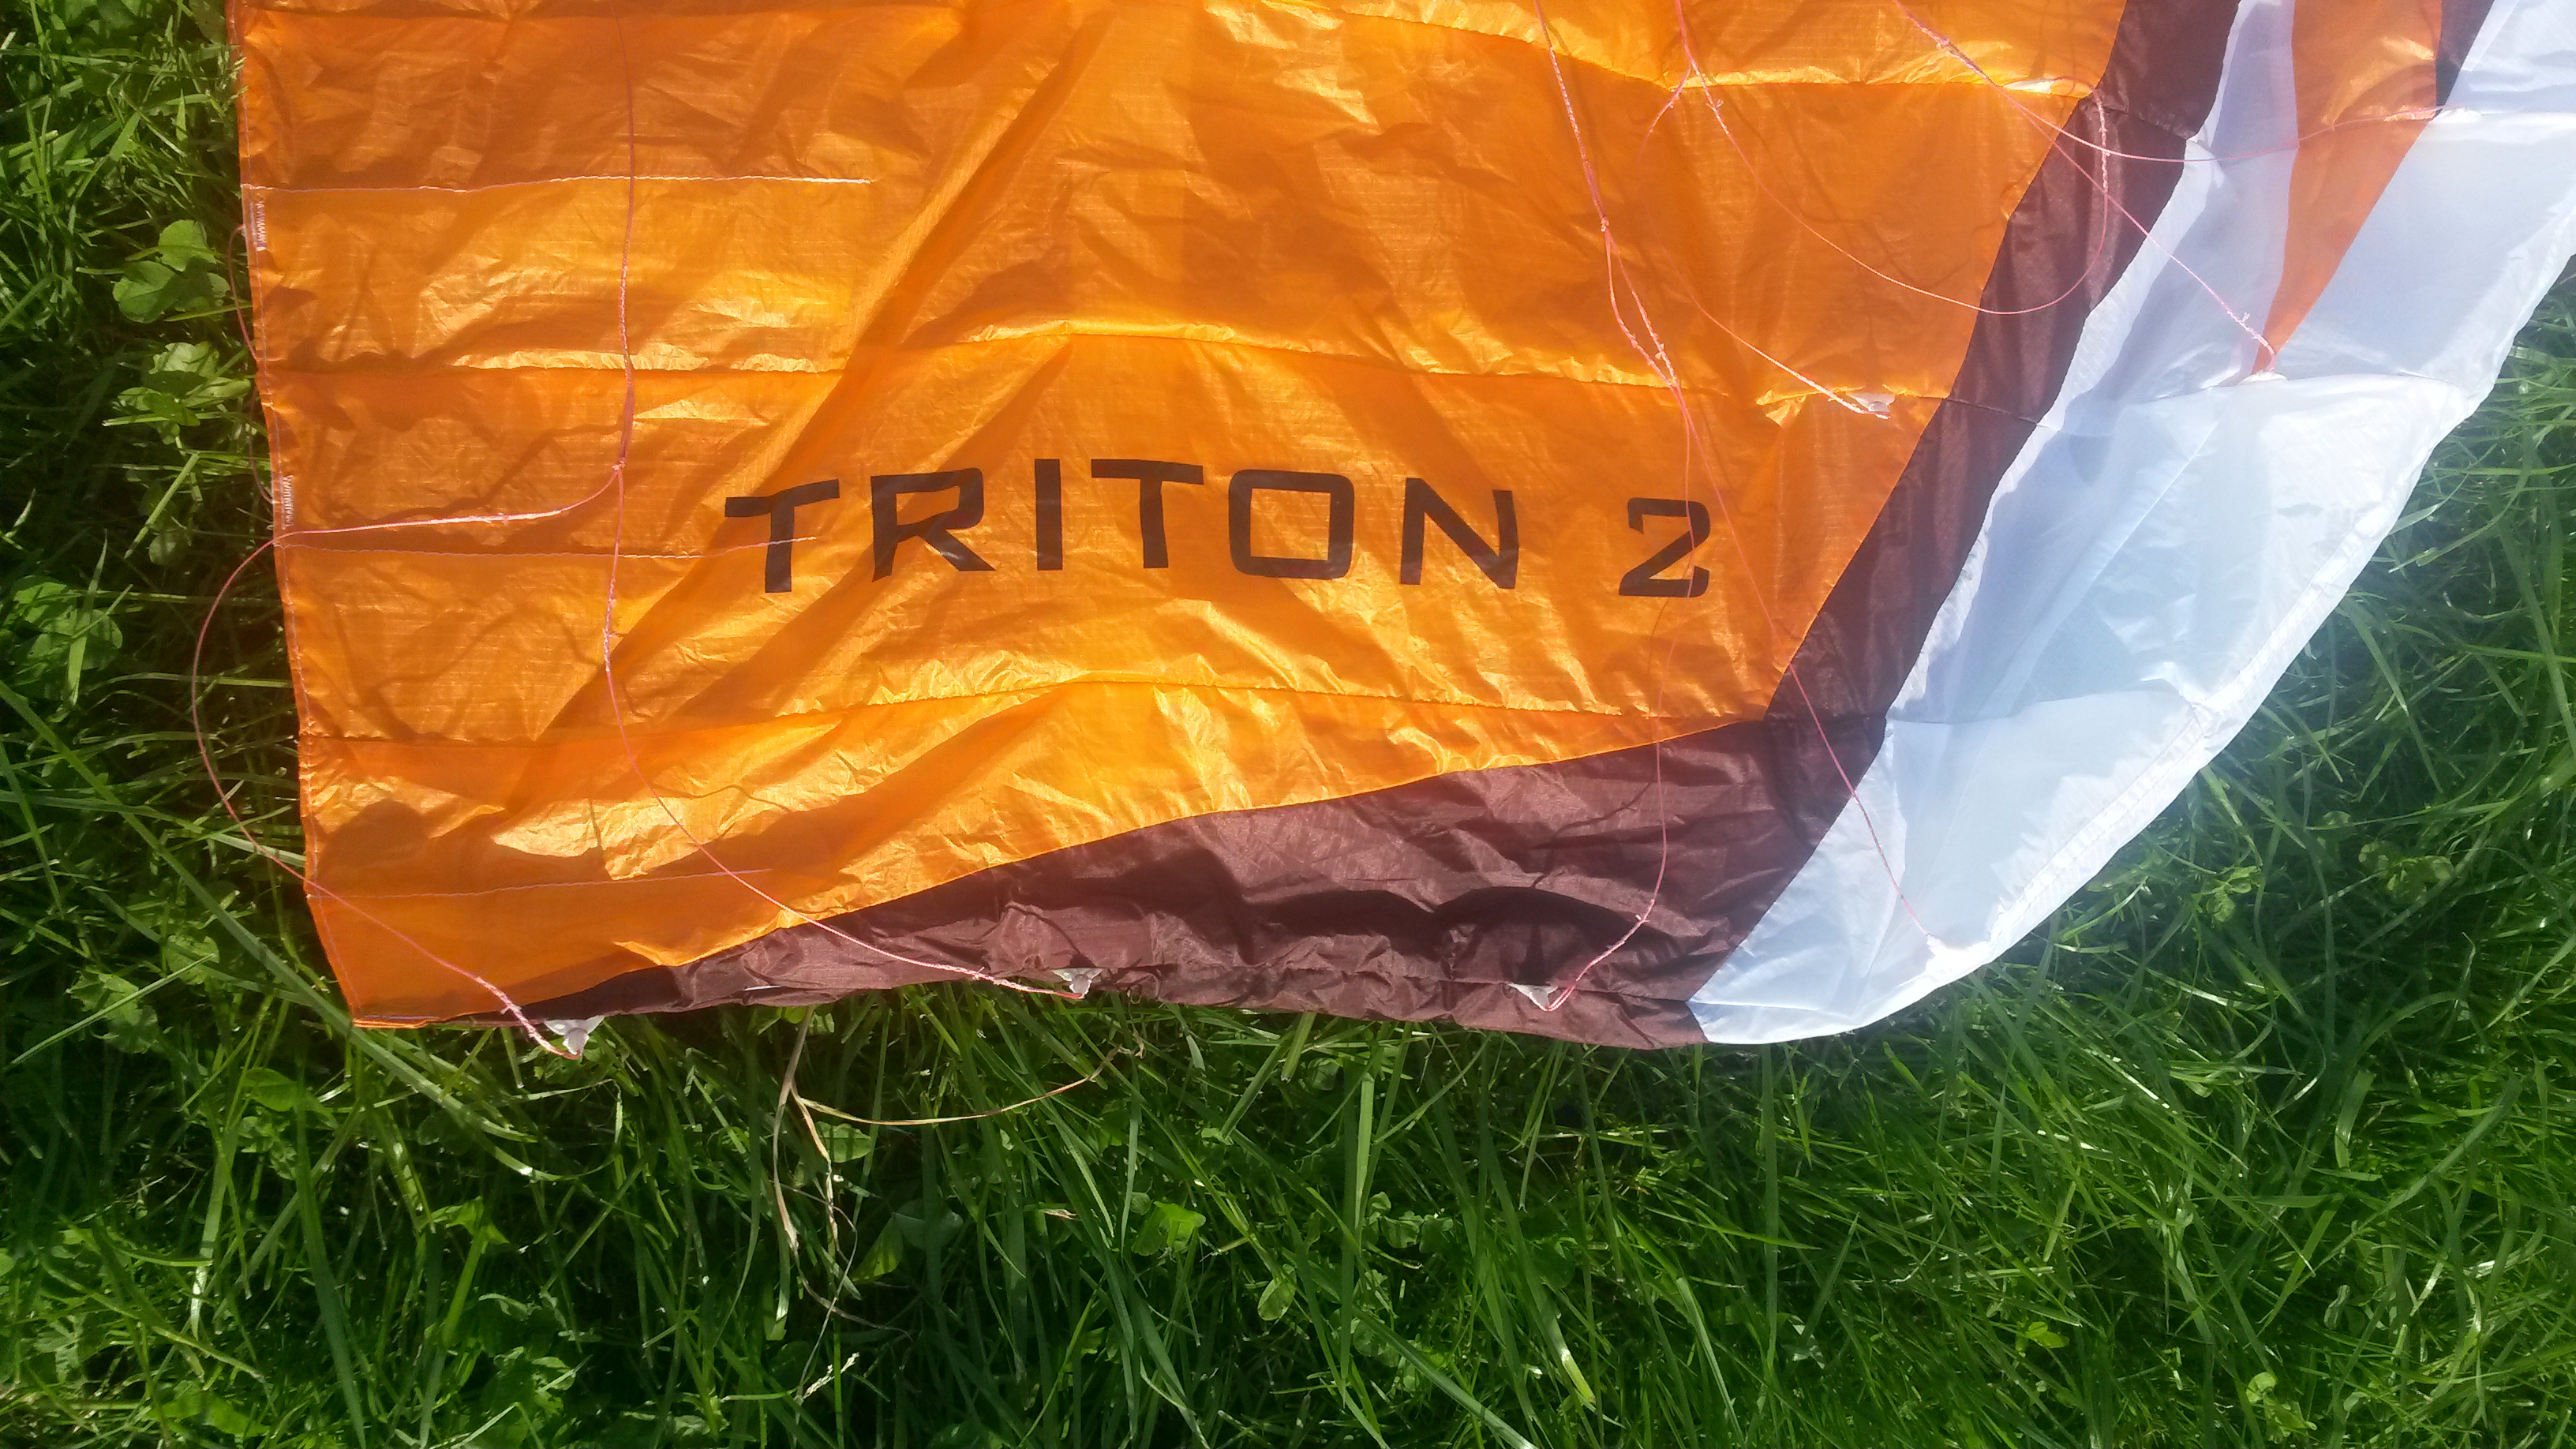 (Fine-)Tuning the Triton 2